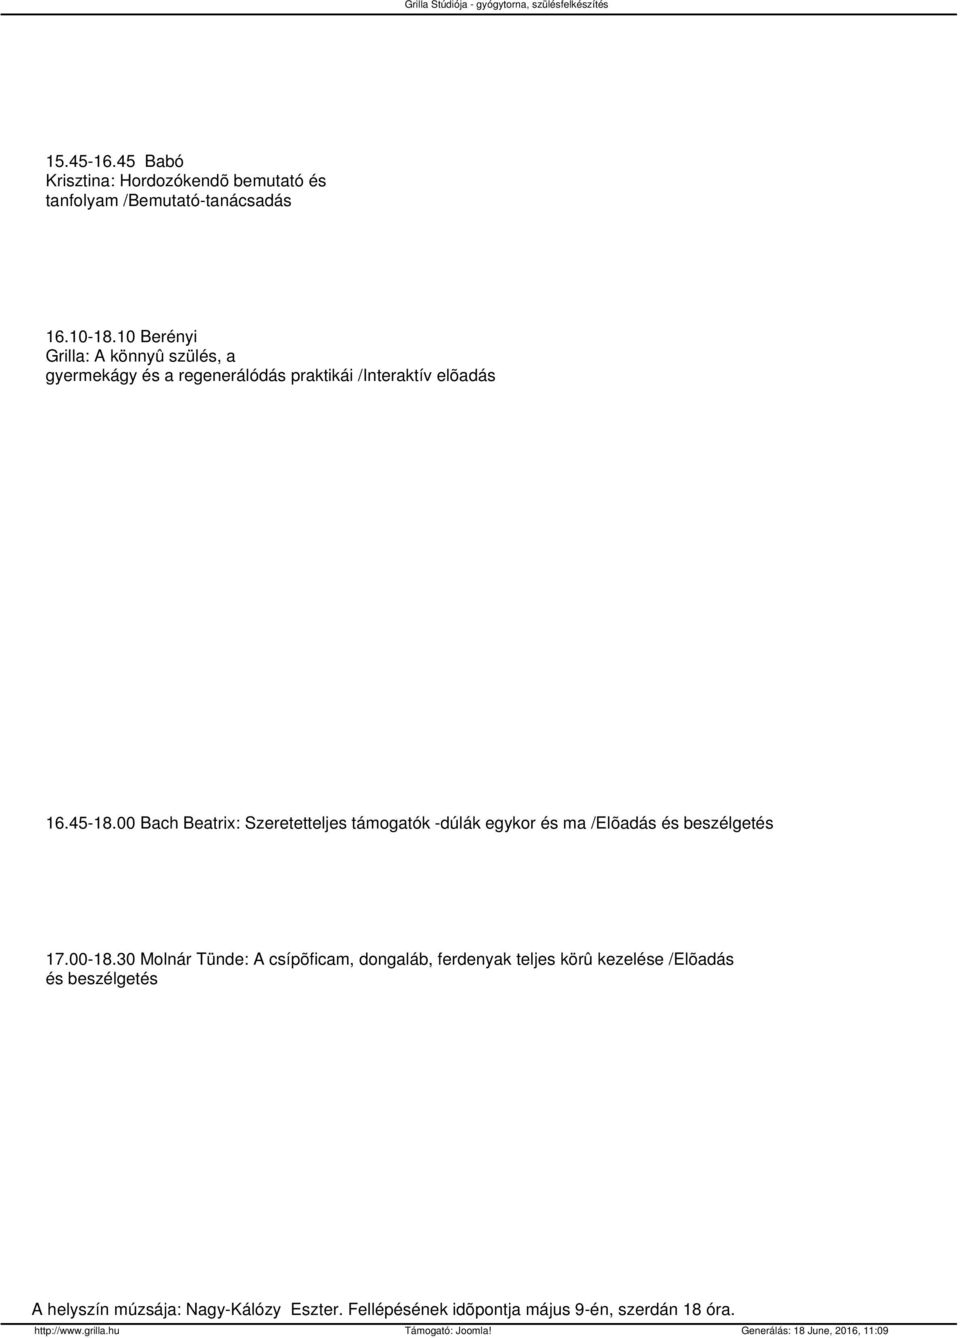 00 Bach Beatrix: Szeretetteljes támogatók -dúlák egykor és ma /Elõadás és beszélgetés 17.00-18.